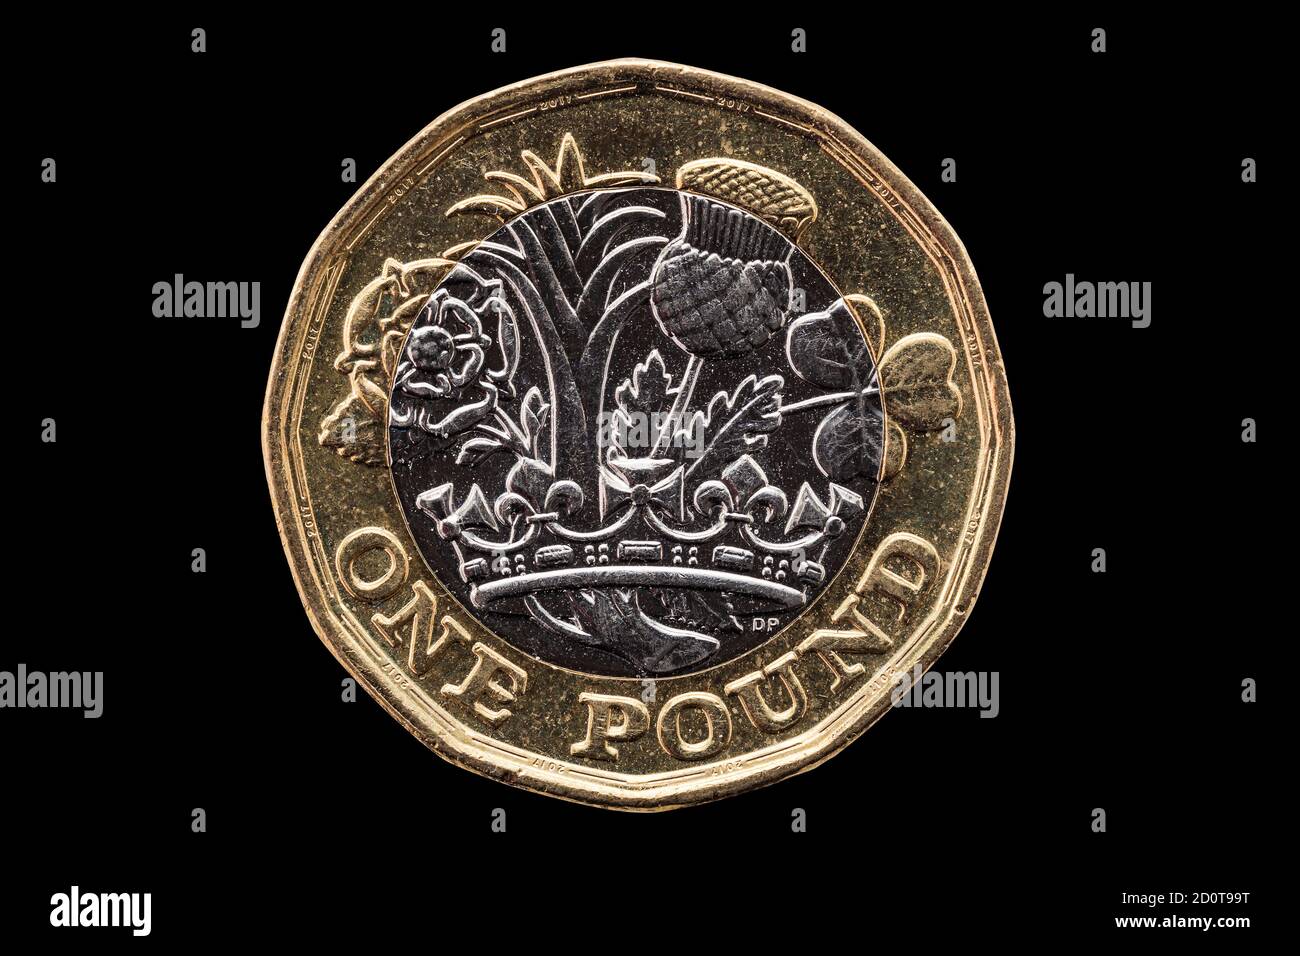 È stata introdotta una nuova moneta inglese da una libbra in Inghilterra 2017 che mostrano gli emblemi di ciascuna delle nazioni tagliate fuori ed isolato su un stock nero di sfondo Foto Stock